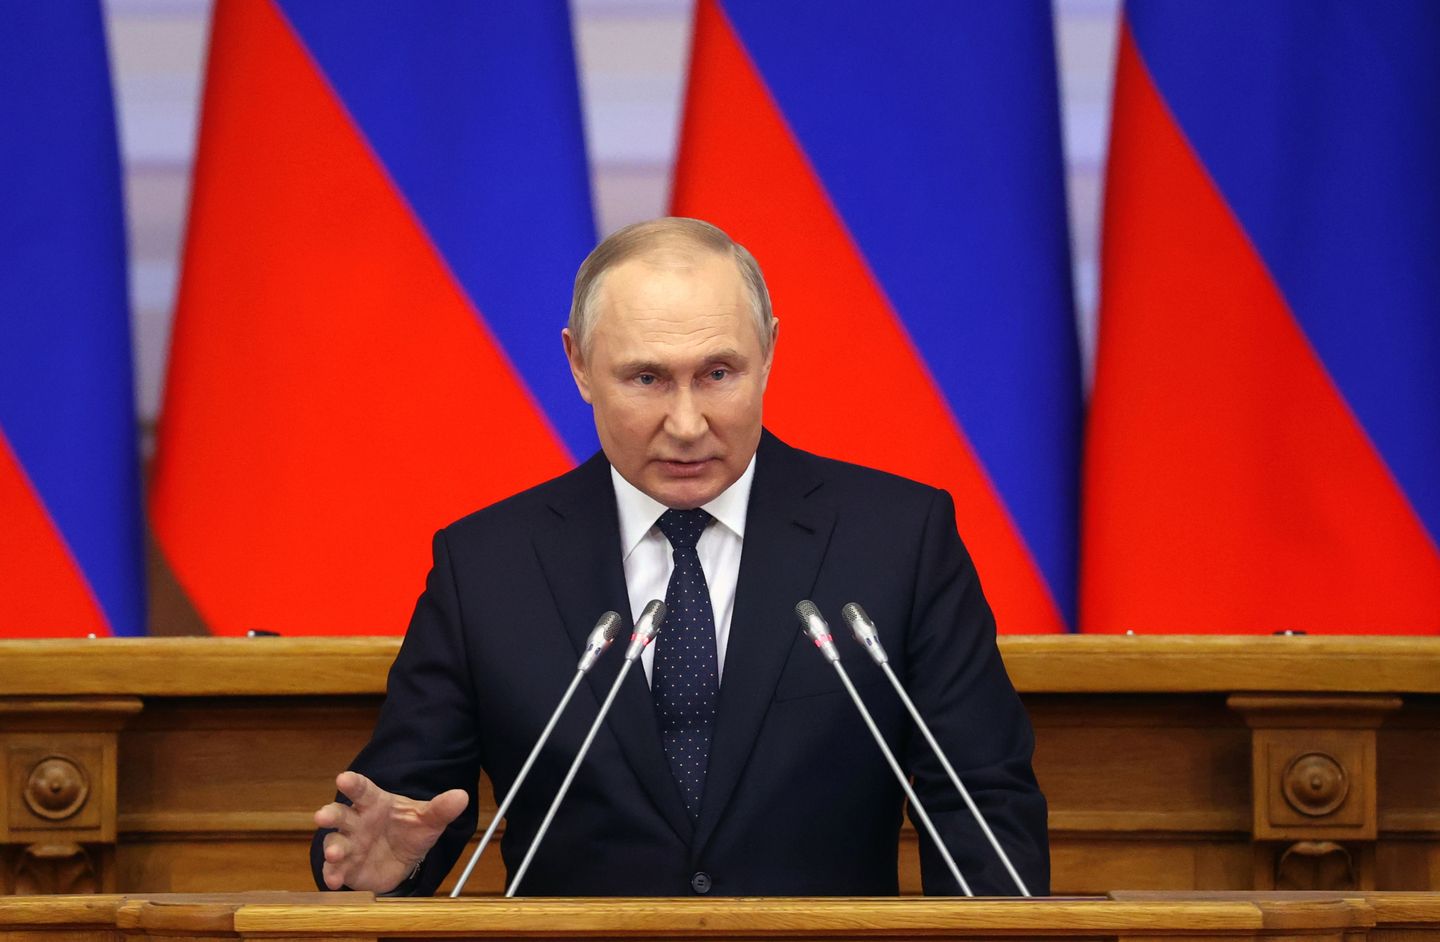 Öfkeli Putin, Batı'ya karşı enerji ve nükleer tehditler kullanıyor